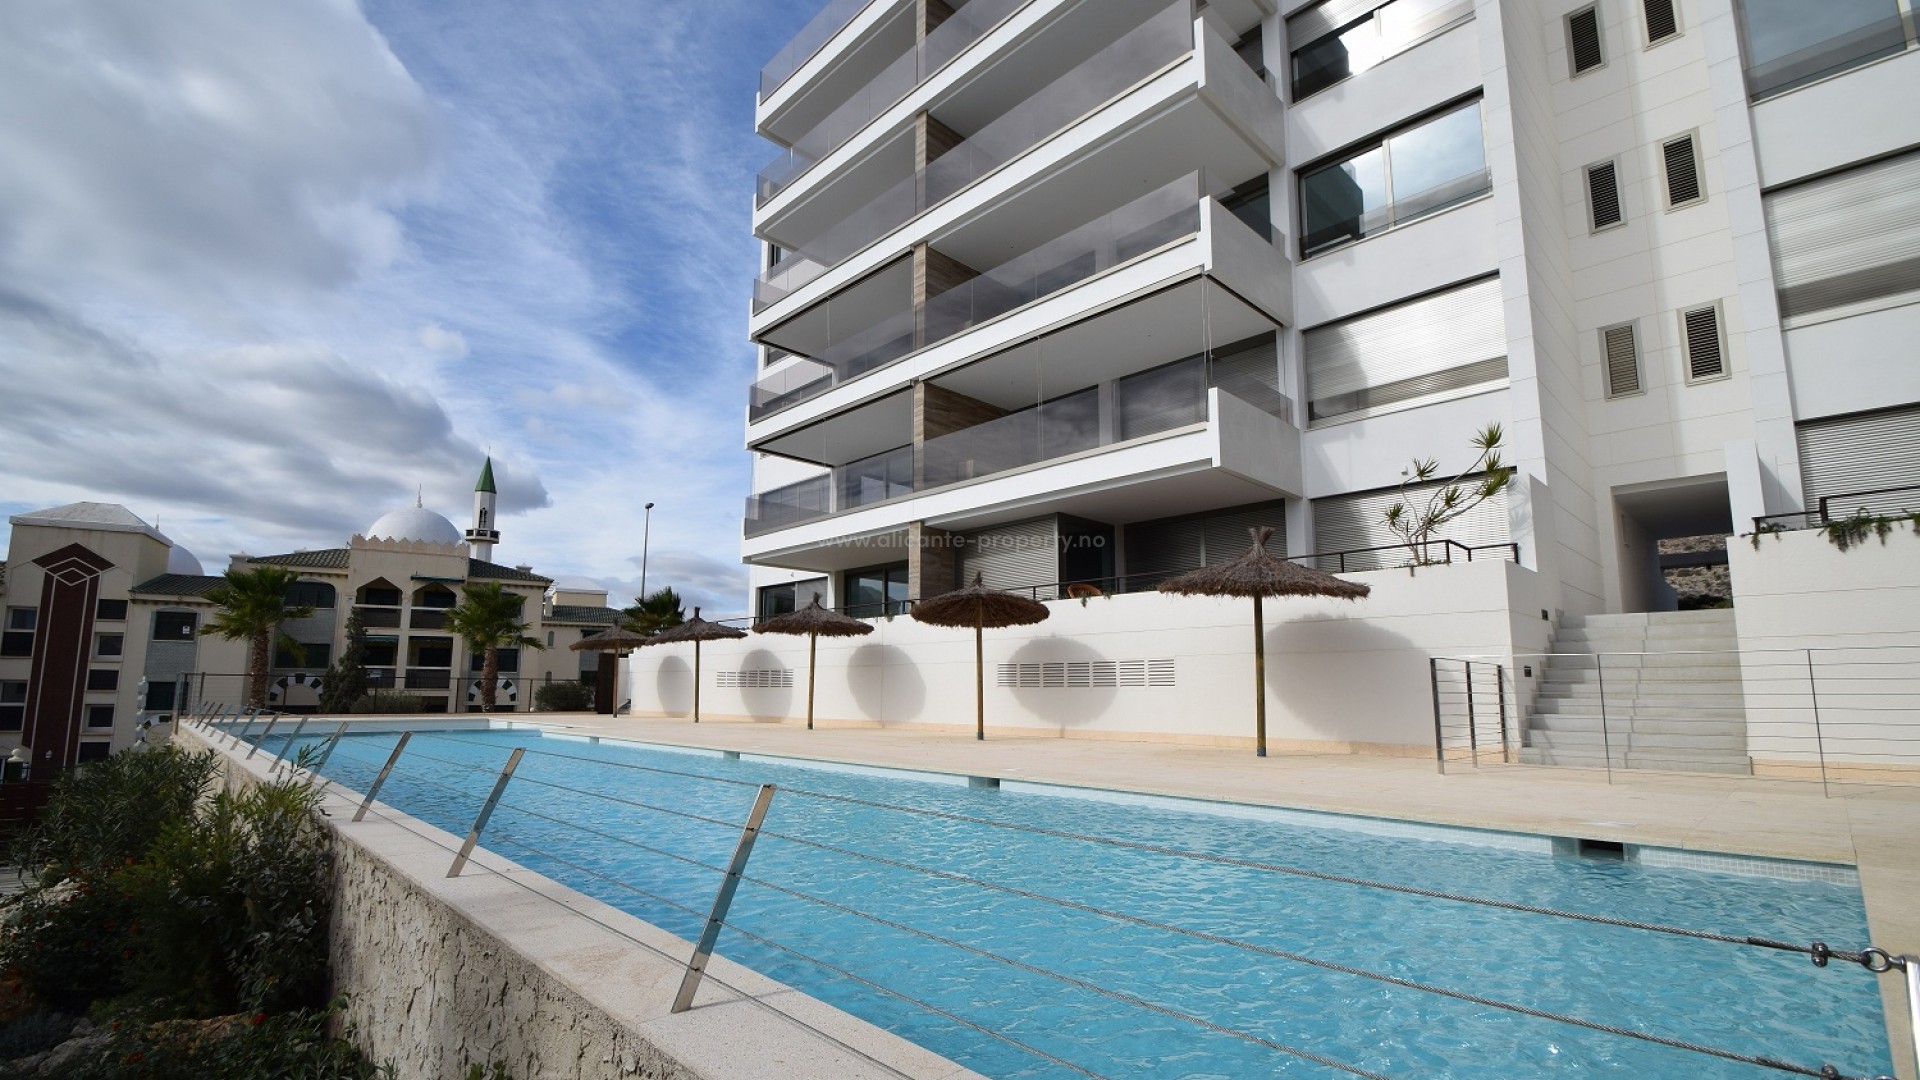 20 nye  moderne leiligheter Santa Pola, 3 soverom, 2 bad, stor terrasse med sjø- og havutsikt, gym, 2 bassenger, lekeområde i luksuriøst boligområde.